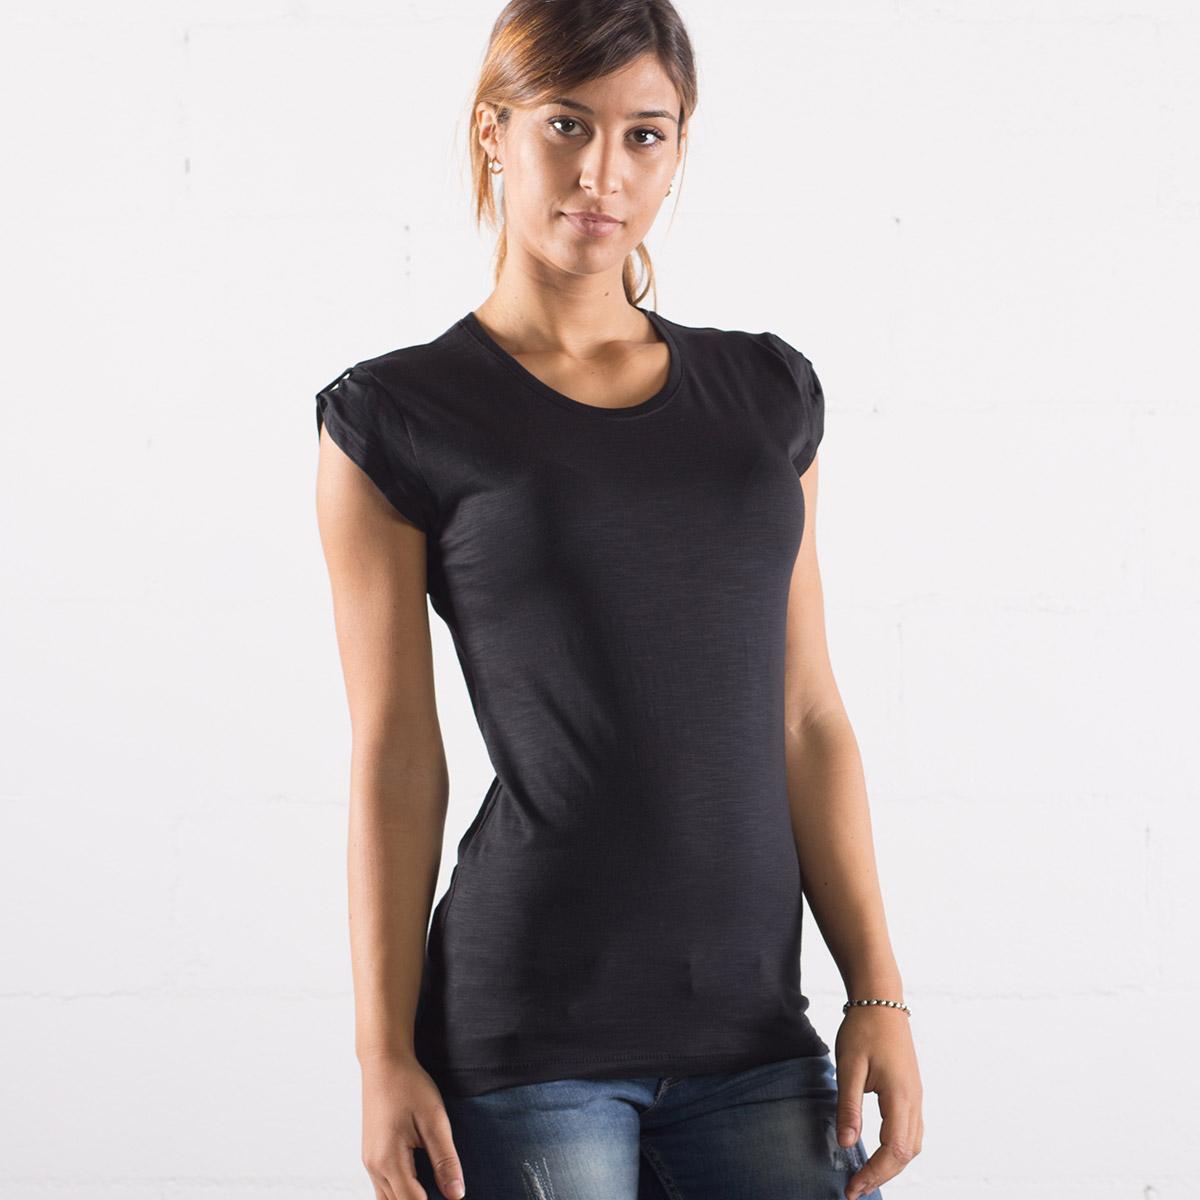 T-shirt Donna Nera 100% cotone fiammato BEST SELLER